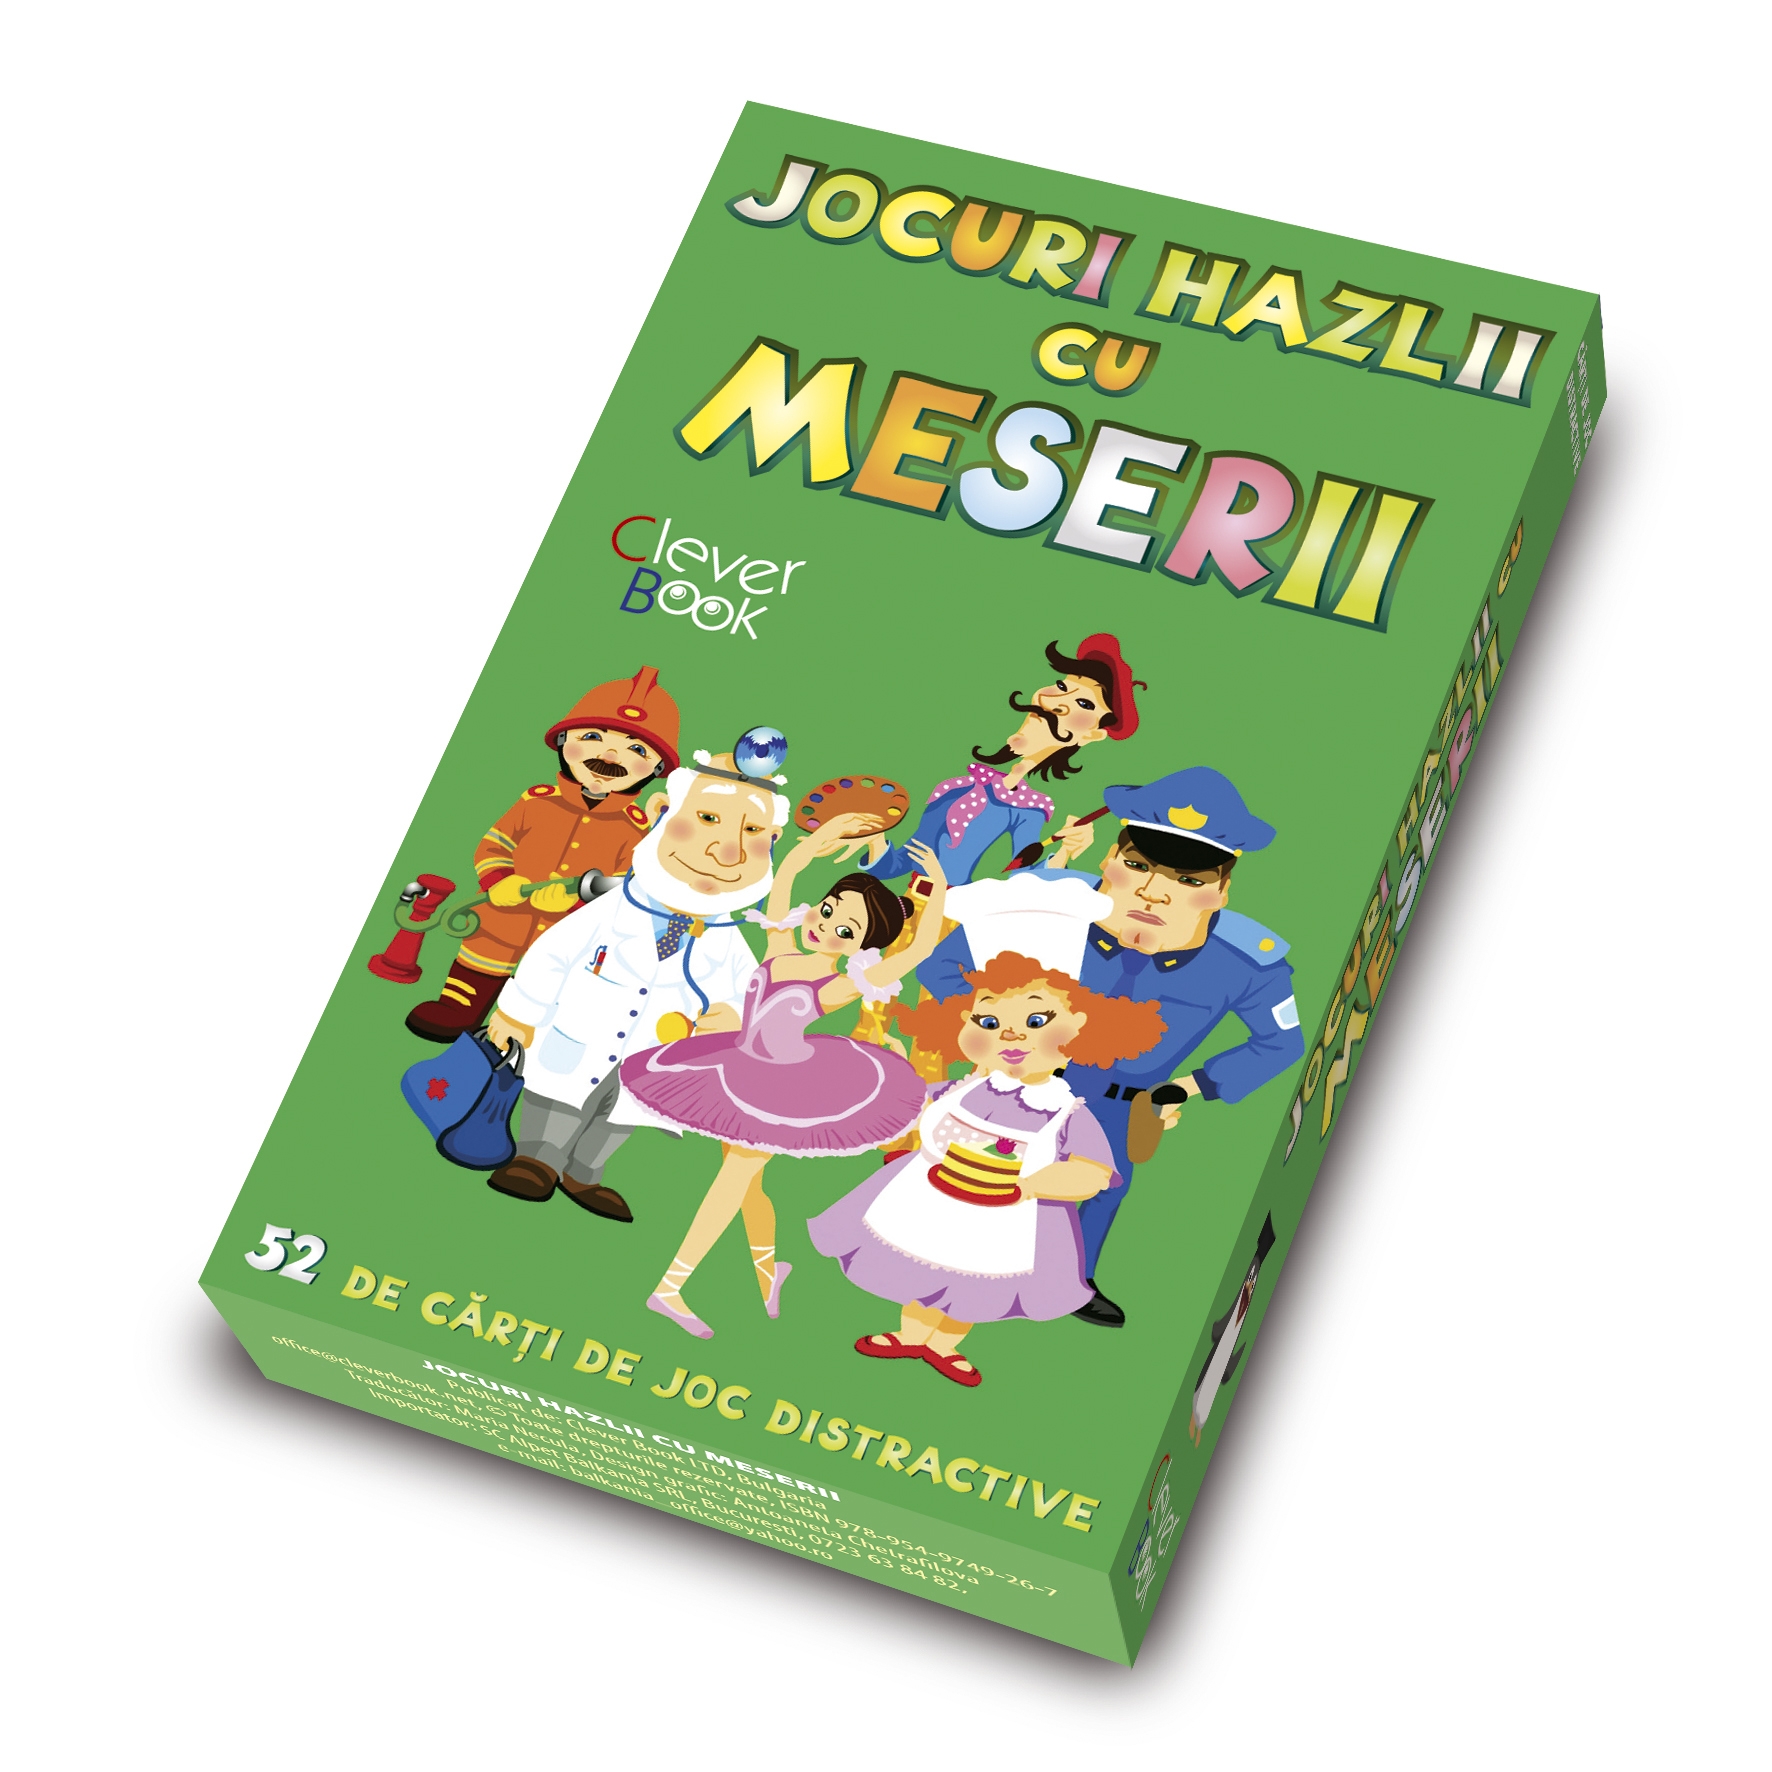 sfatulparintilor.ro – Clever Book- Cutie_Jocuri_hazlii_meserii_3D